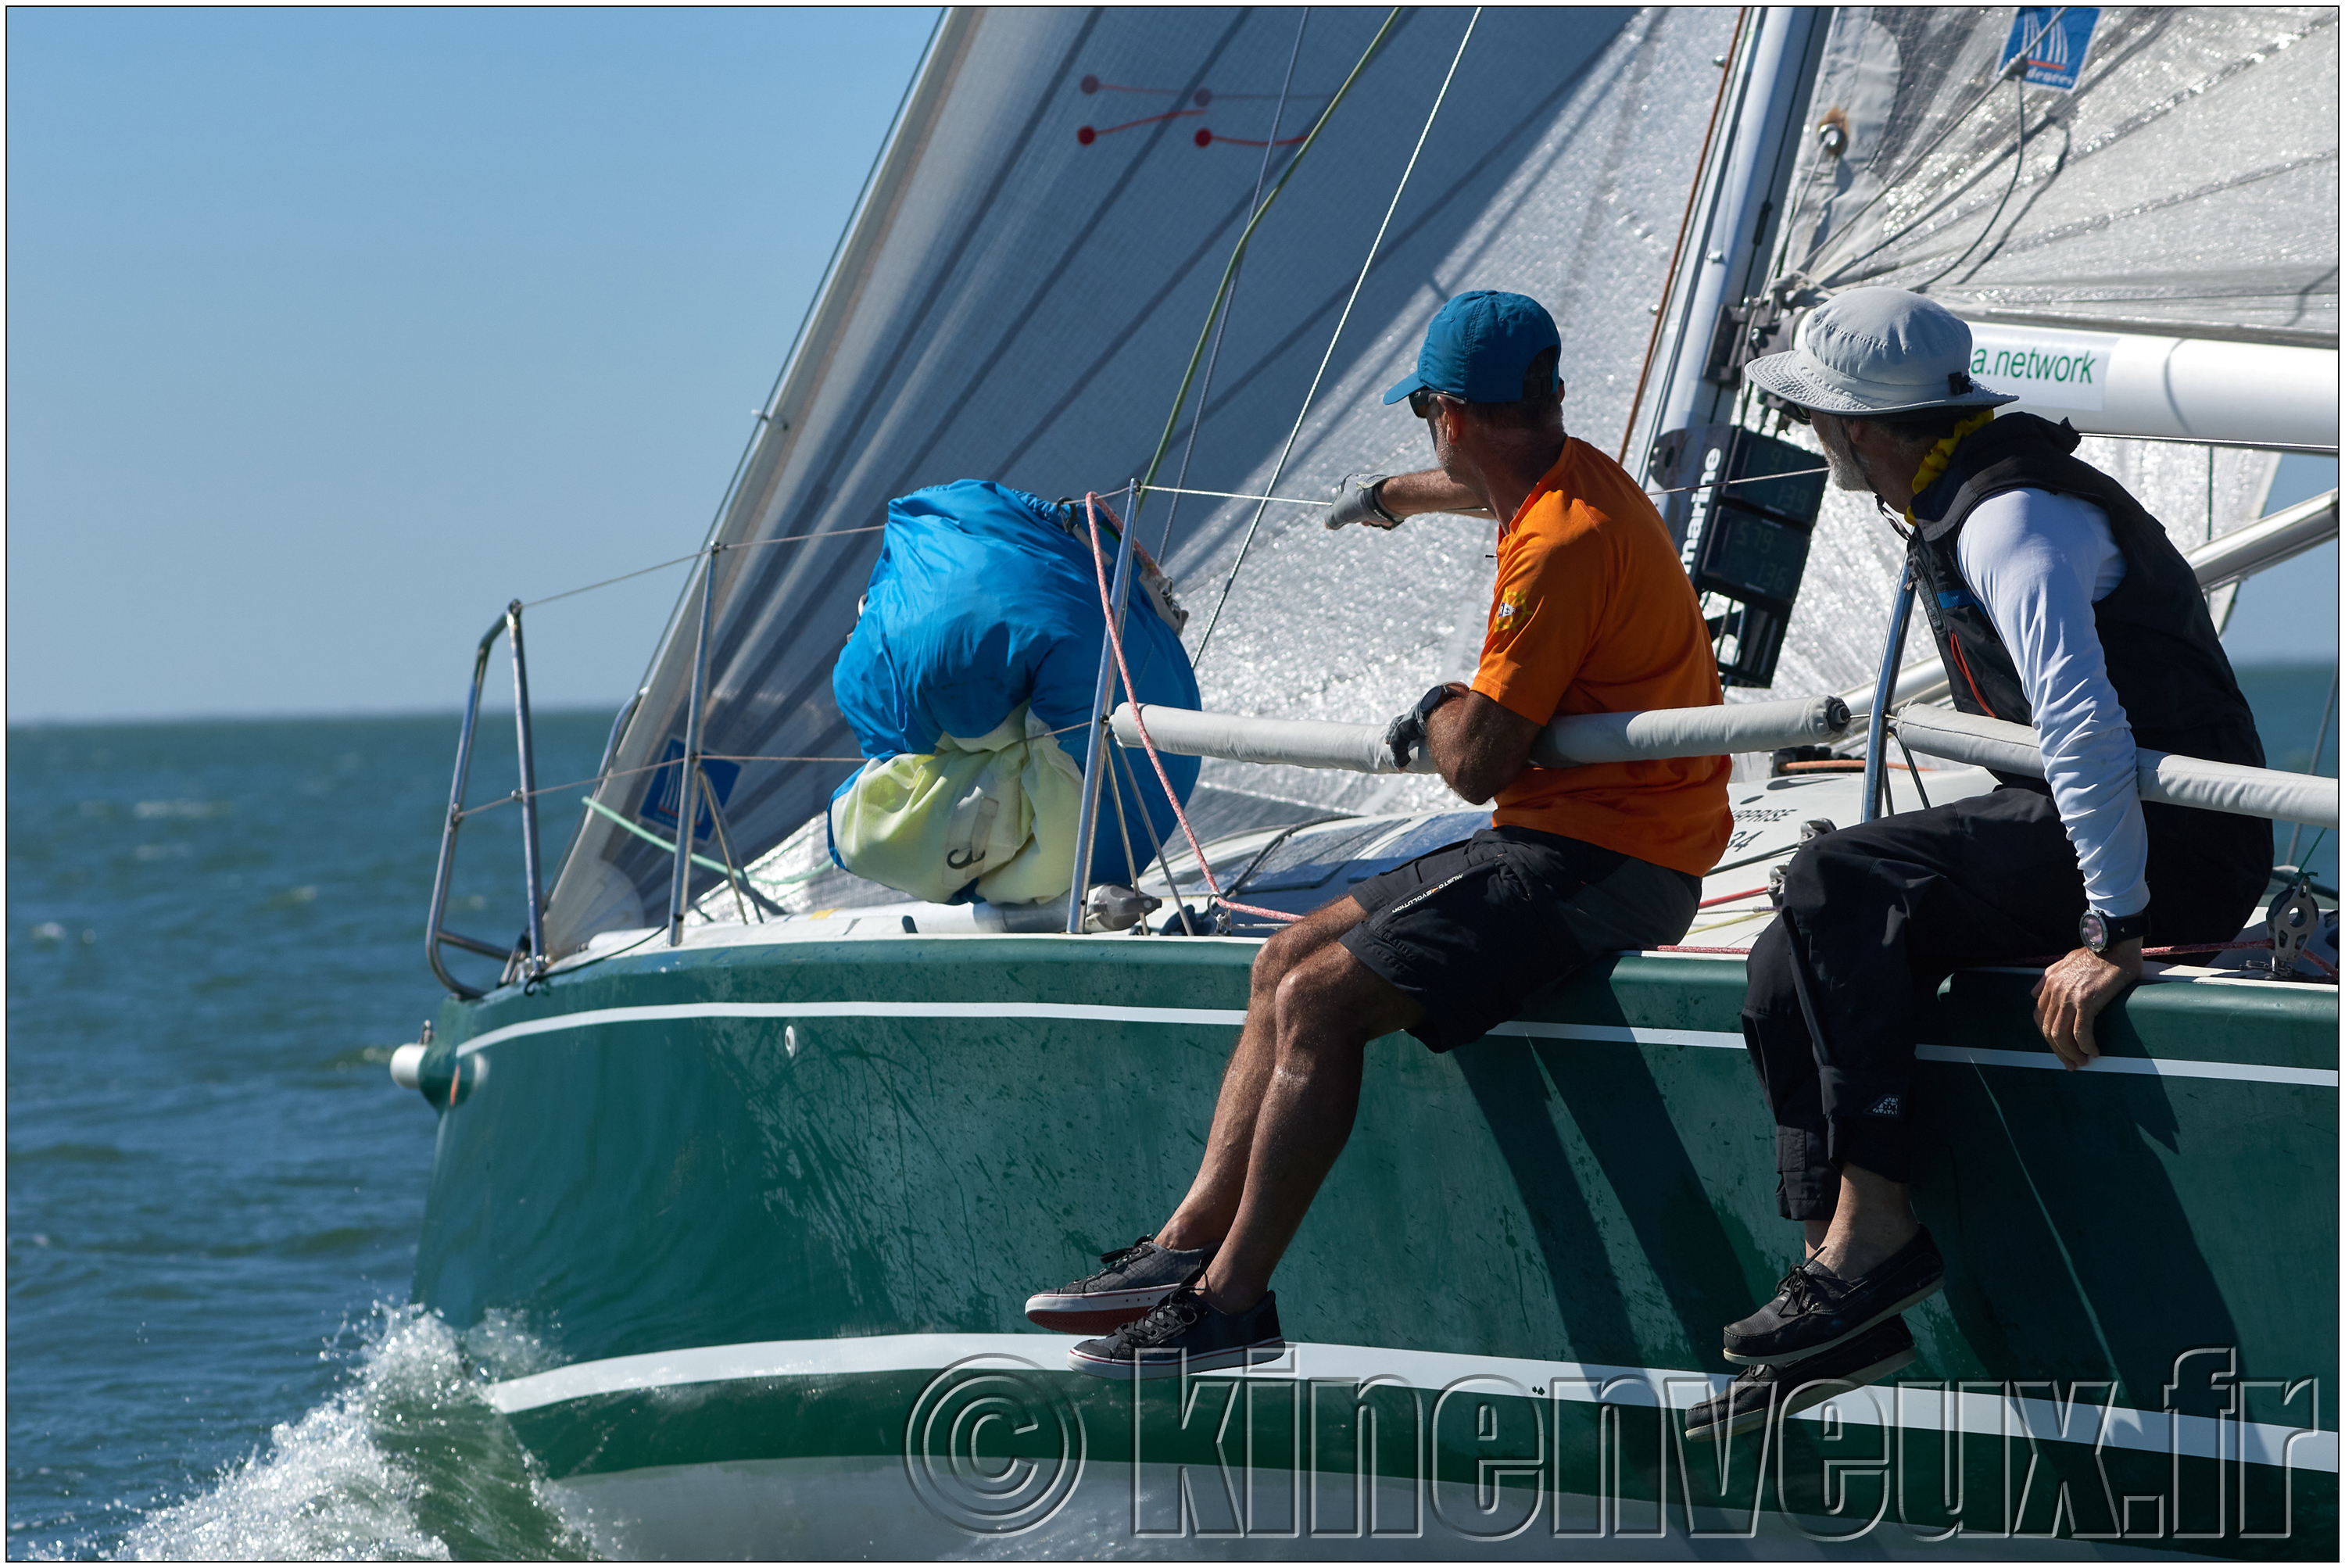 kinenveux_photographie_TourVoile17_096.jpg - samedi : les concurrents sur l'utilme parcous côtier [course 8] dans la Gironde